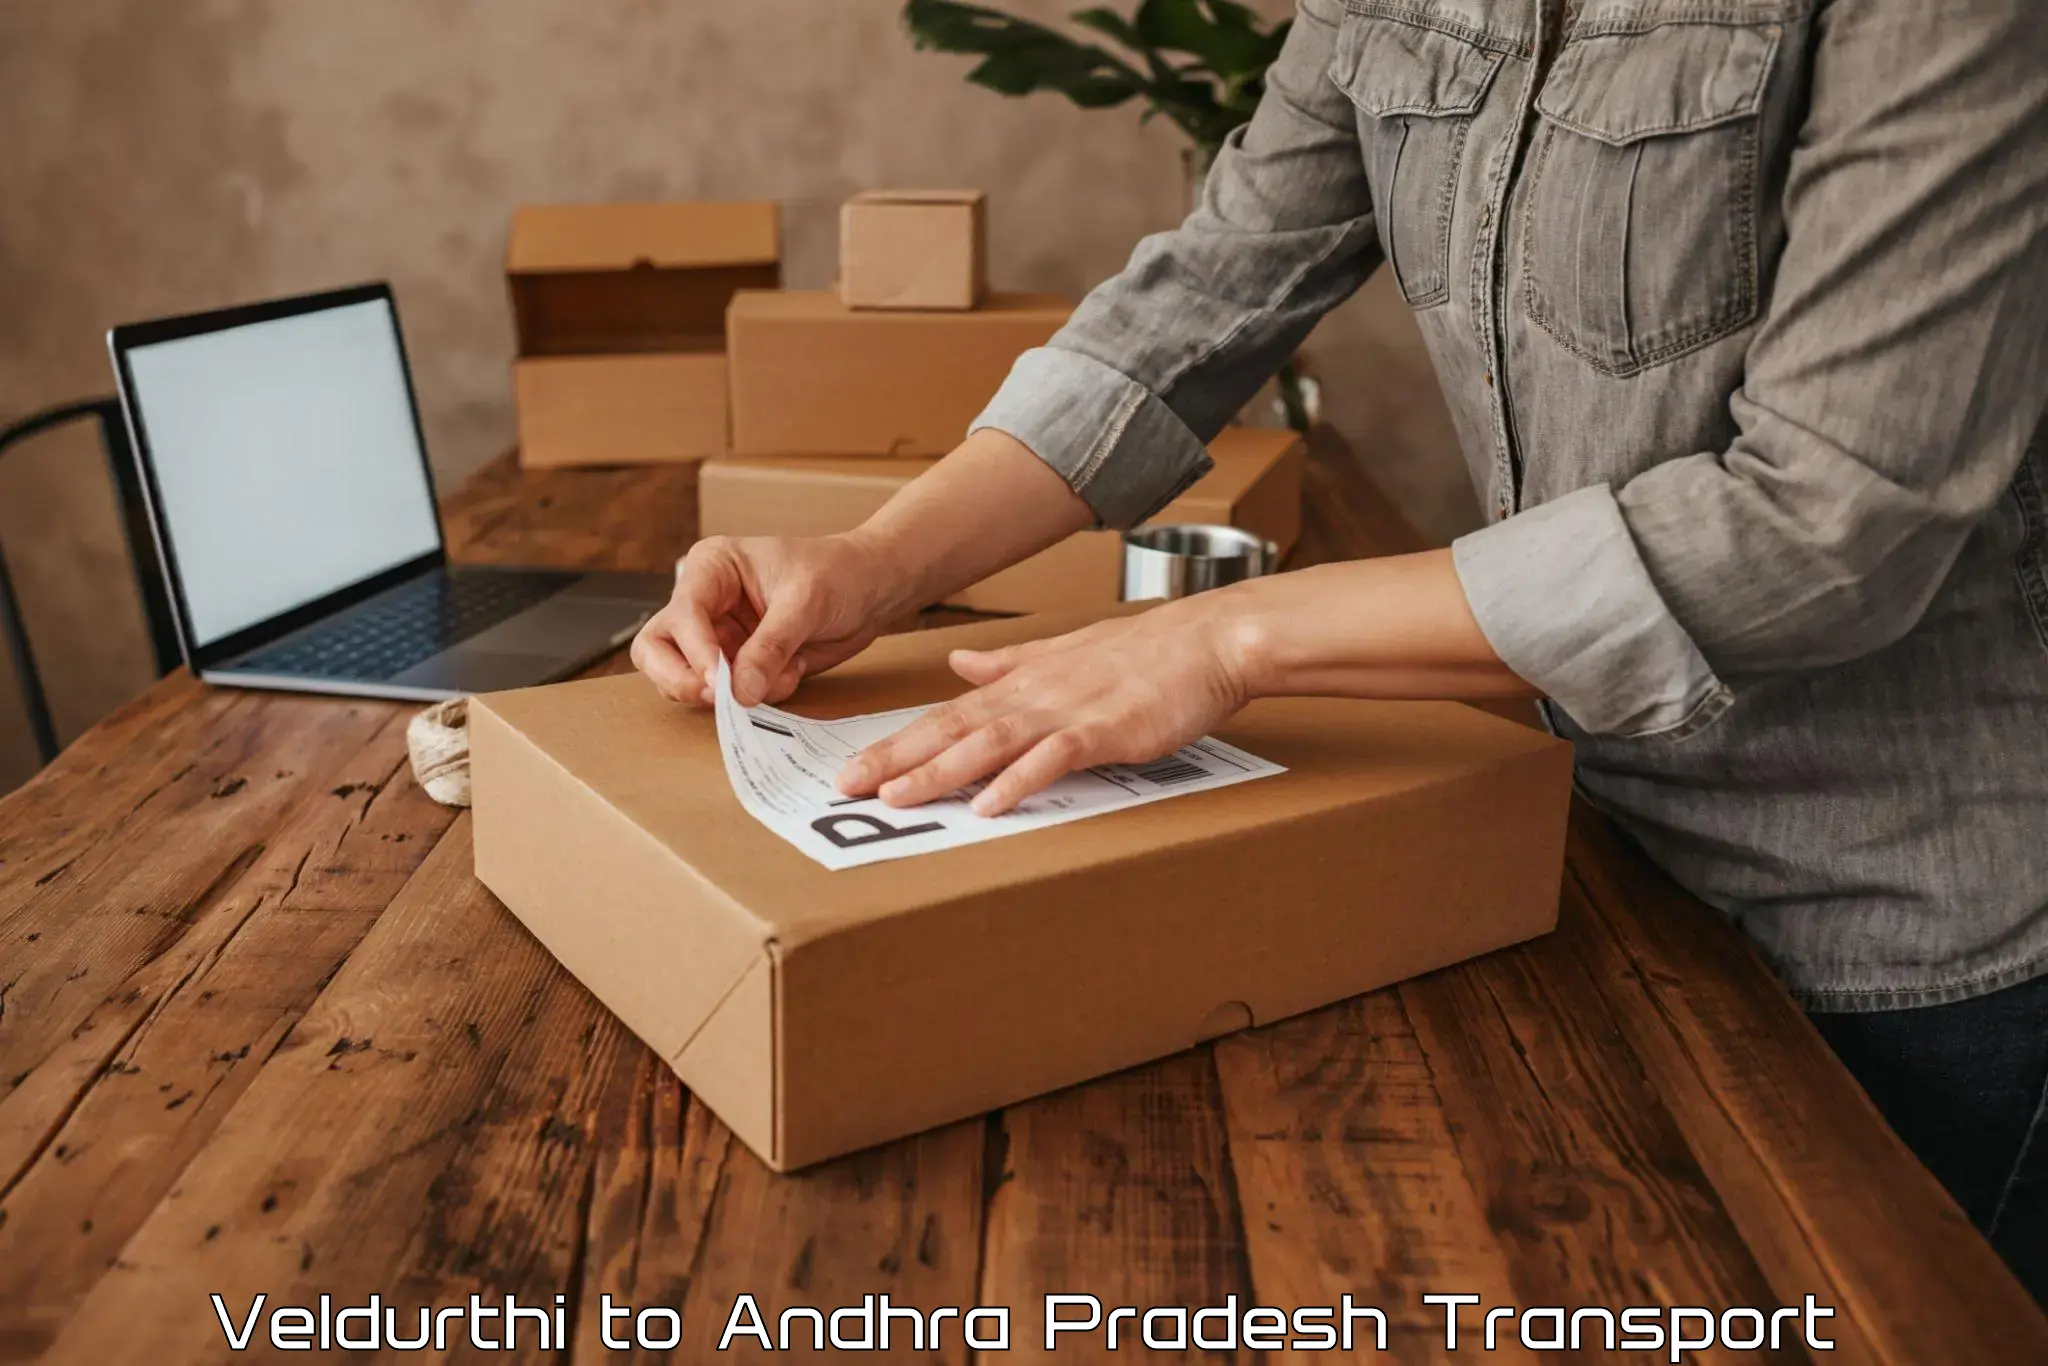 Road transport services Veldurthi to Andhra Pradesh